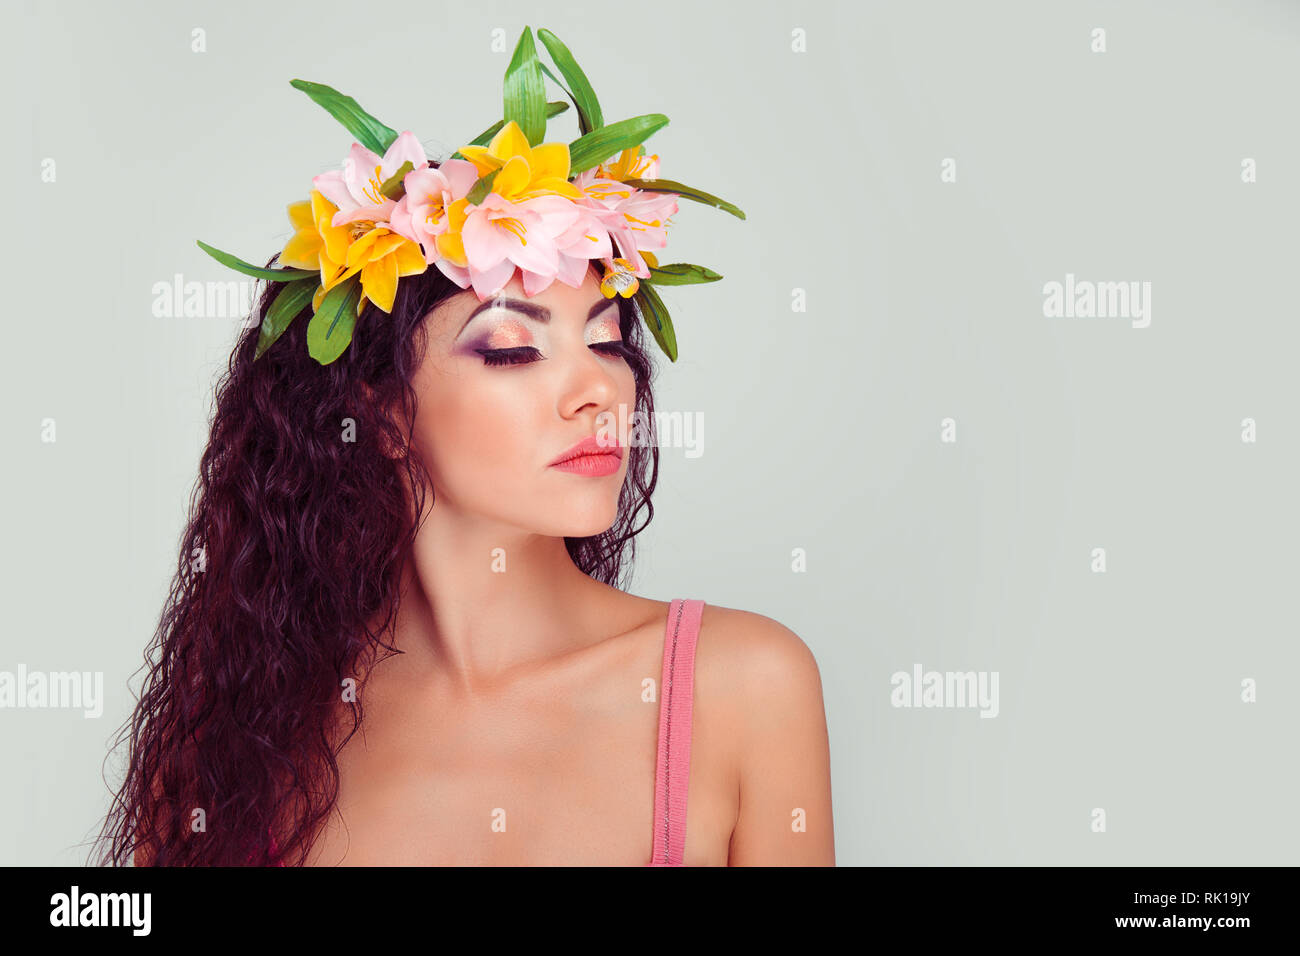 Closeup ritratto di donna con gli occhi chiusi che mostra il trucco colorato nella corona floreale sulla testa. Colombiano ispanica latina razza mista modello, brunette ricci Foto Stock